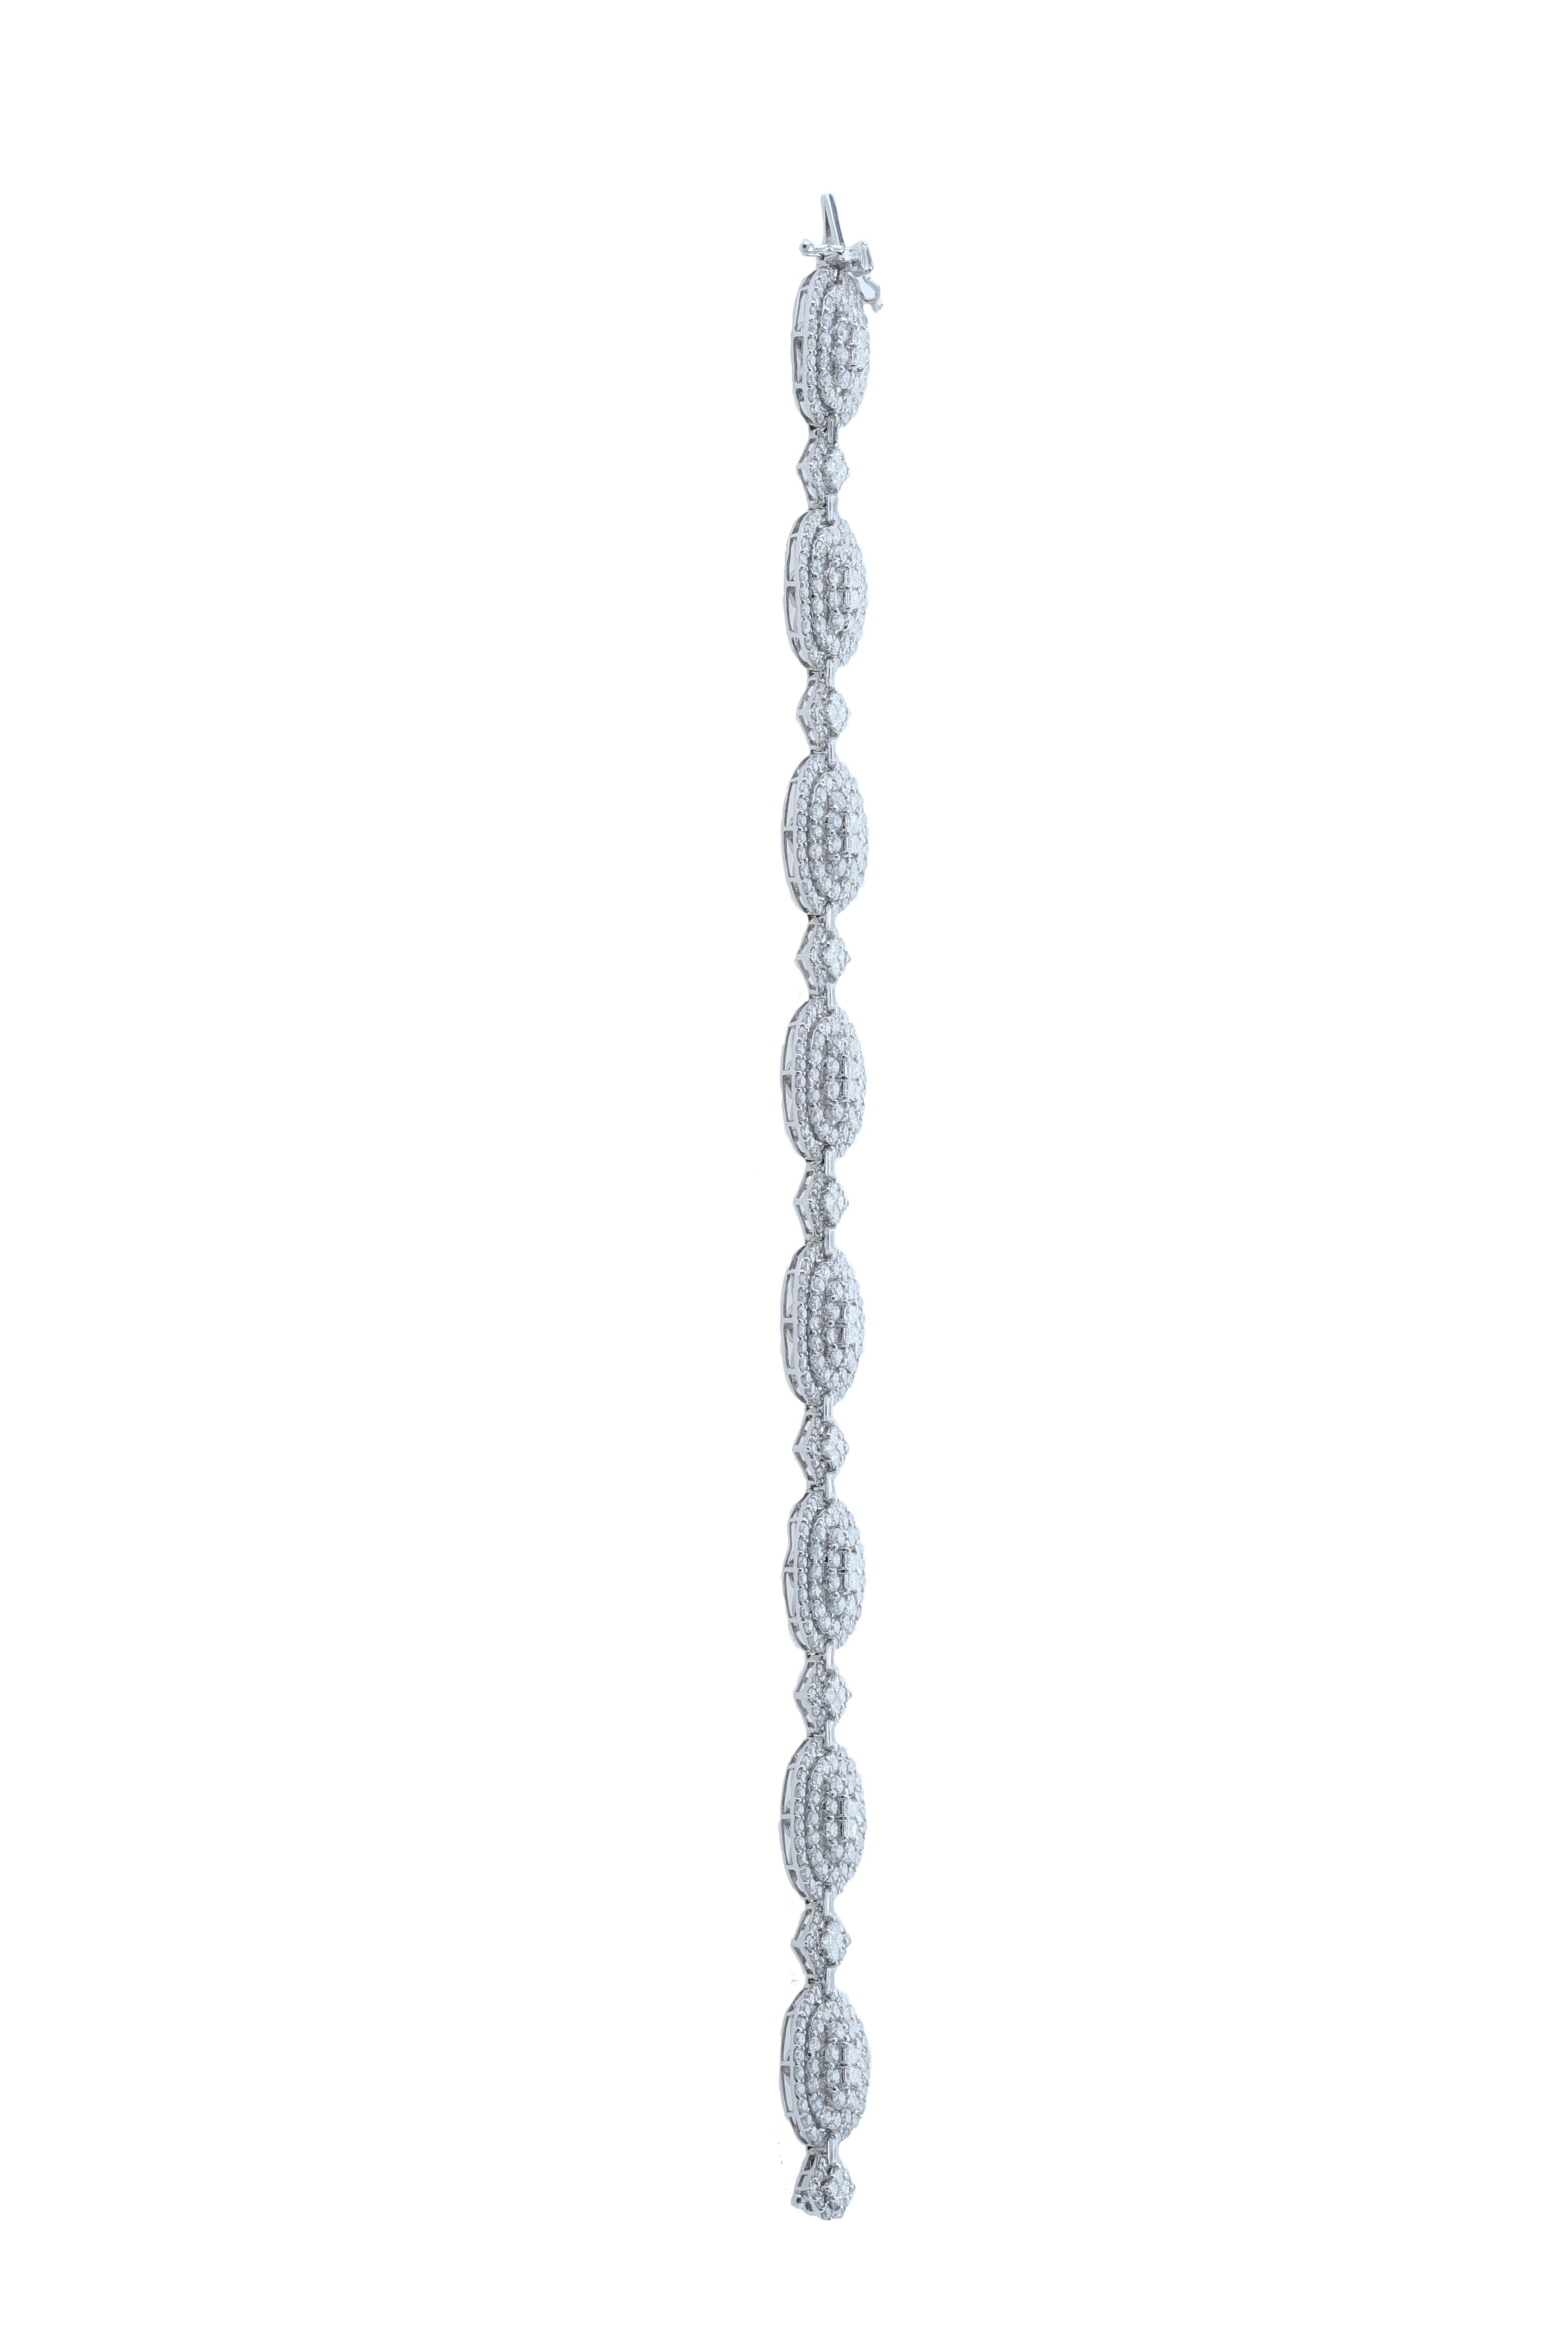 Une cascade de diamants, ce bracelet en diamants blancs présente un design inspirant, avec des solitaires ronds entourés de diamants ronds fascinants. 
	
Diamant Clarity :  SI / G H COULEUR
Diamants (Poids total en carats : 10,63 ct) 
or blanc 18